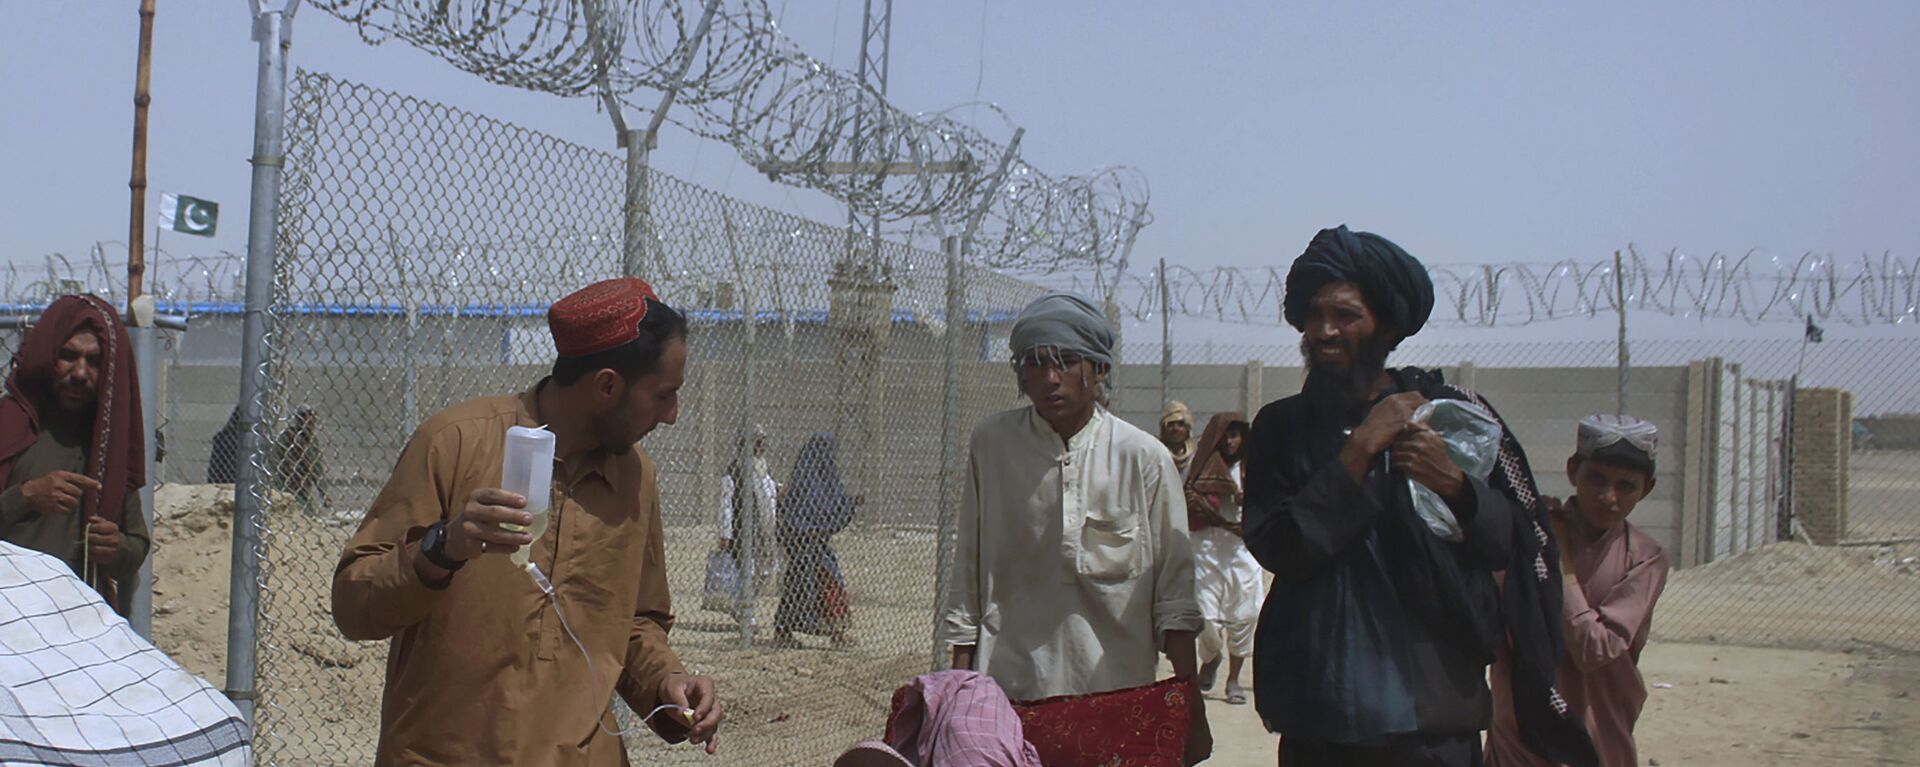 Афганские беженцы въезжают в Пакистан через пограничный переход в Чамане - Sputnik Тоҷикистон, 1920, 21.06.2022